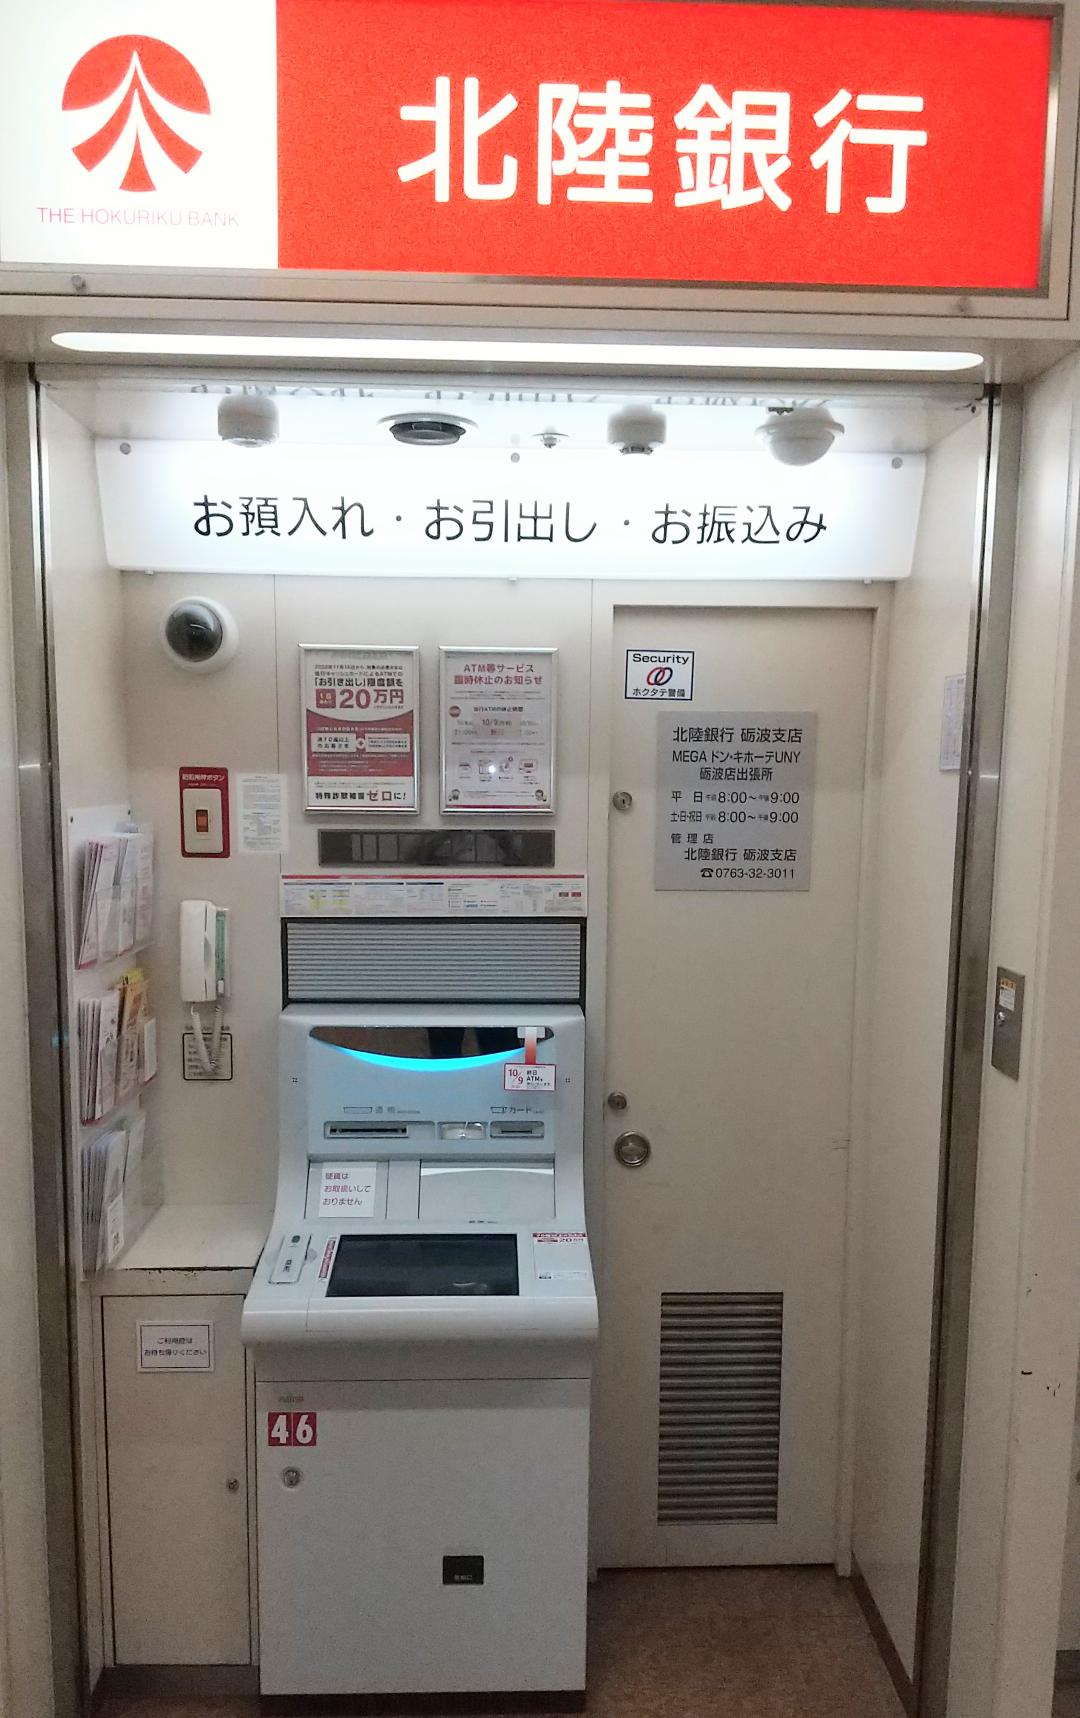 北陸銀行ATM 店舗イメージ1